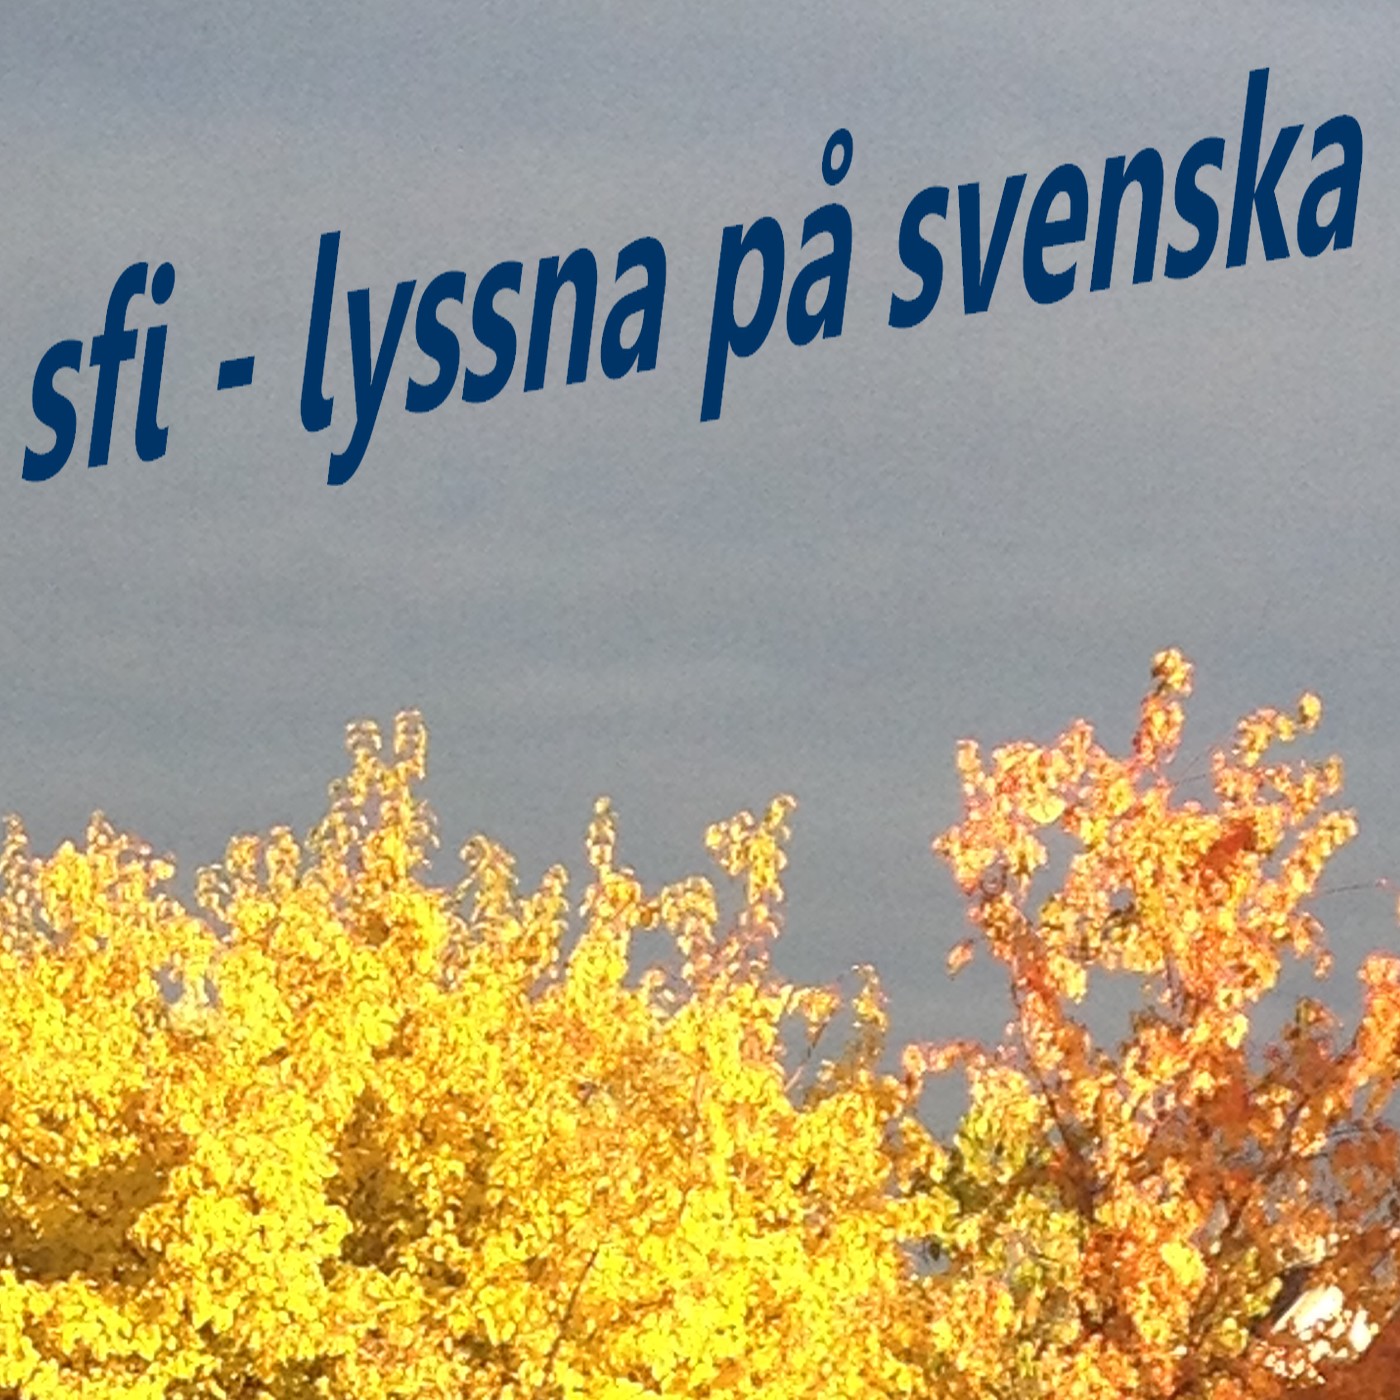 SFI - Lyssna på svenska Podcast artwork